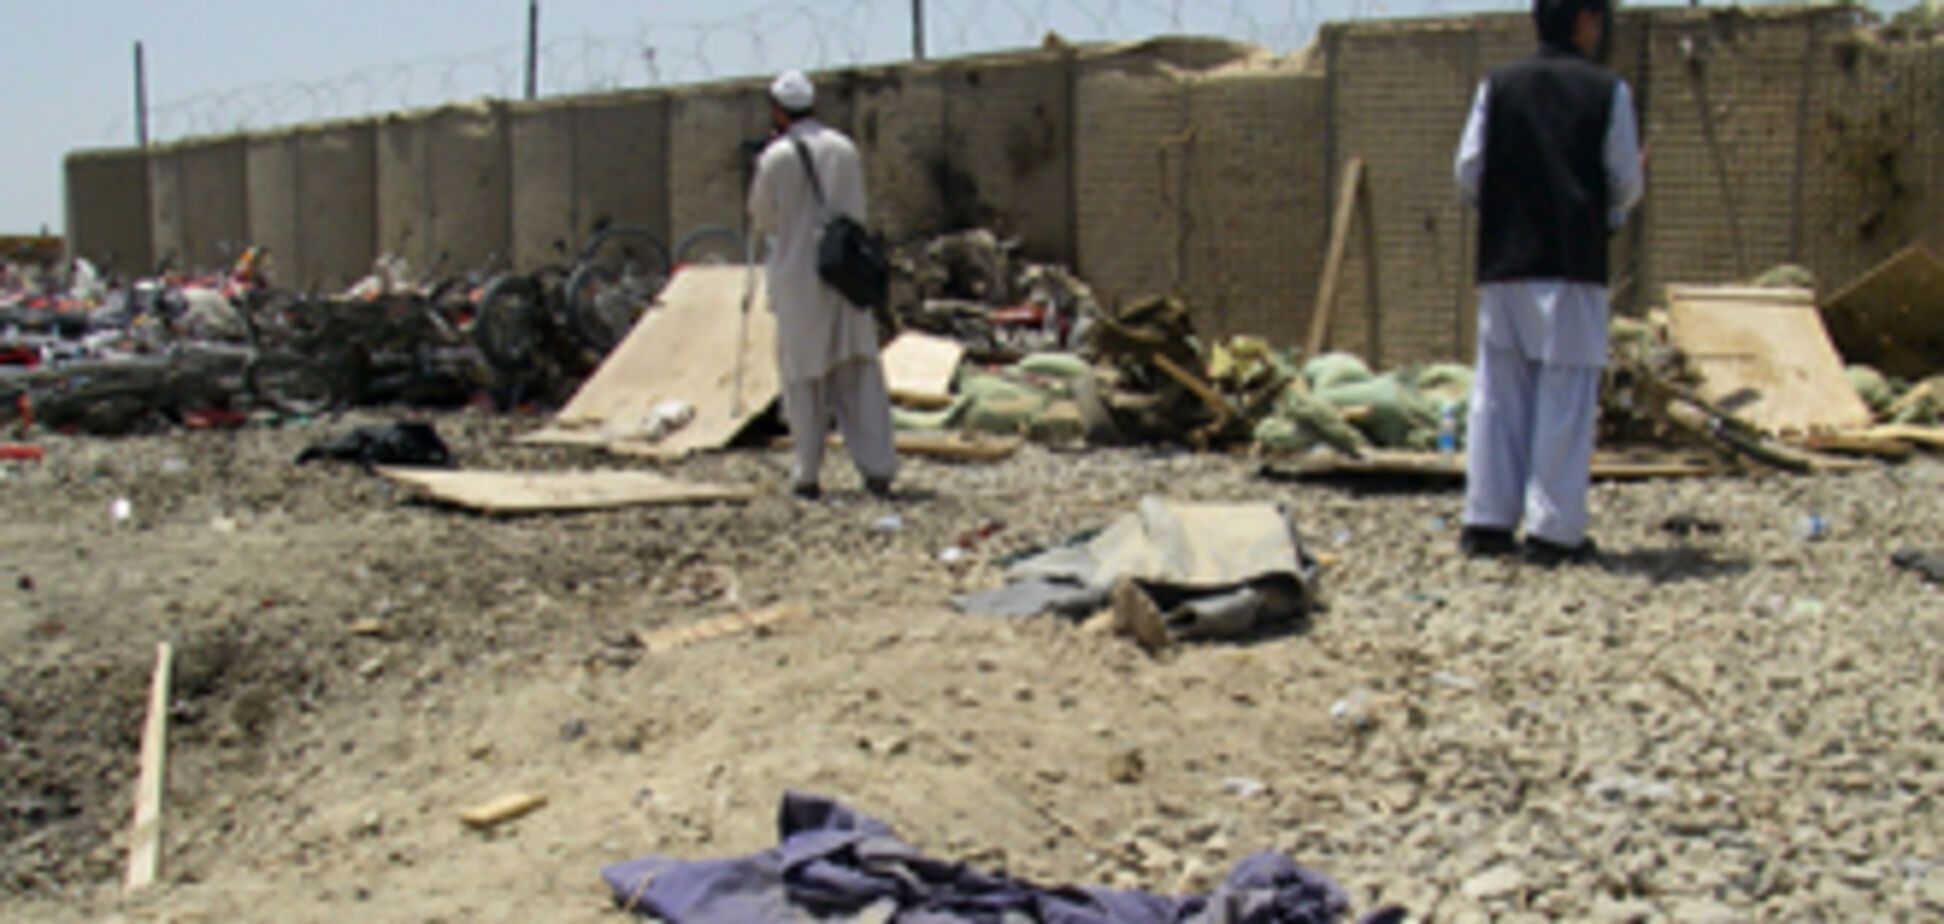 Теракт в Афганистане унес жизни 30 человек